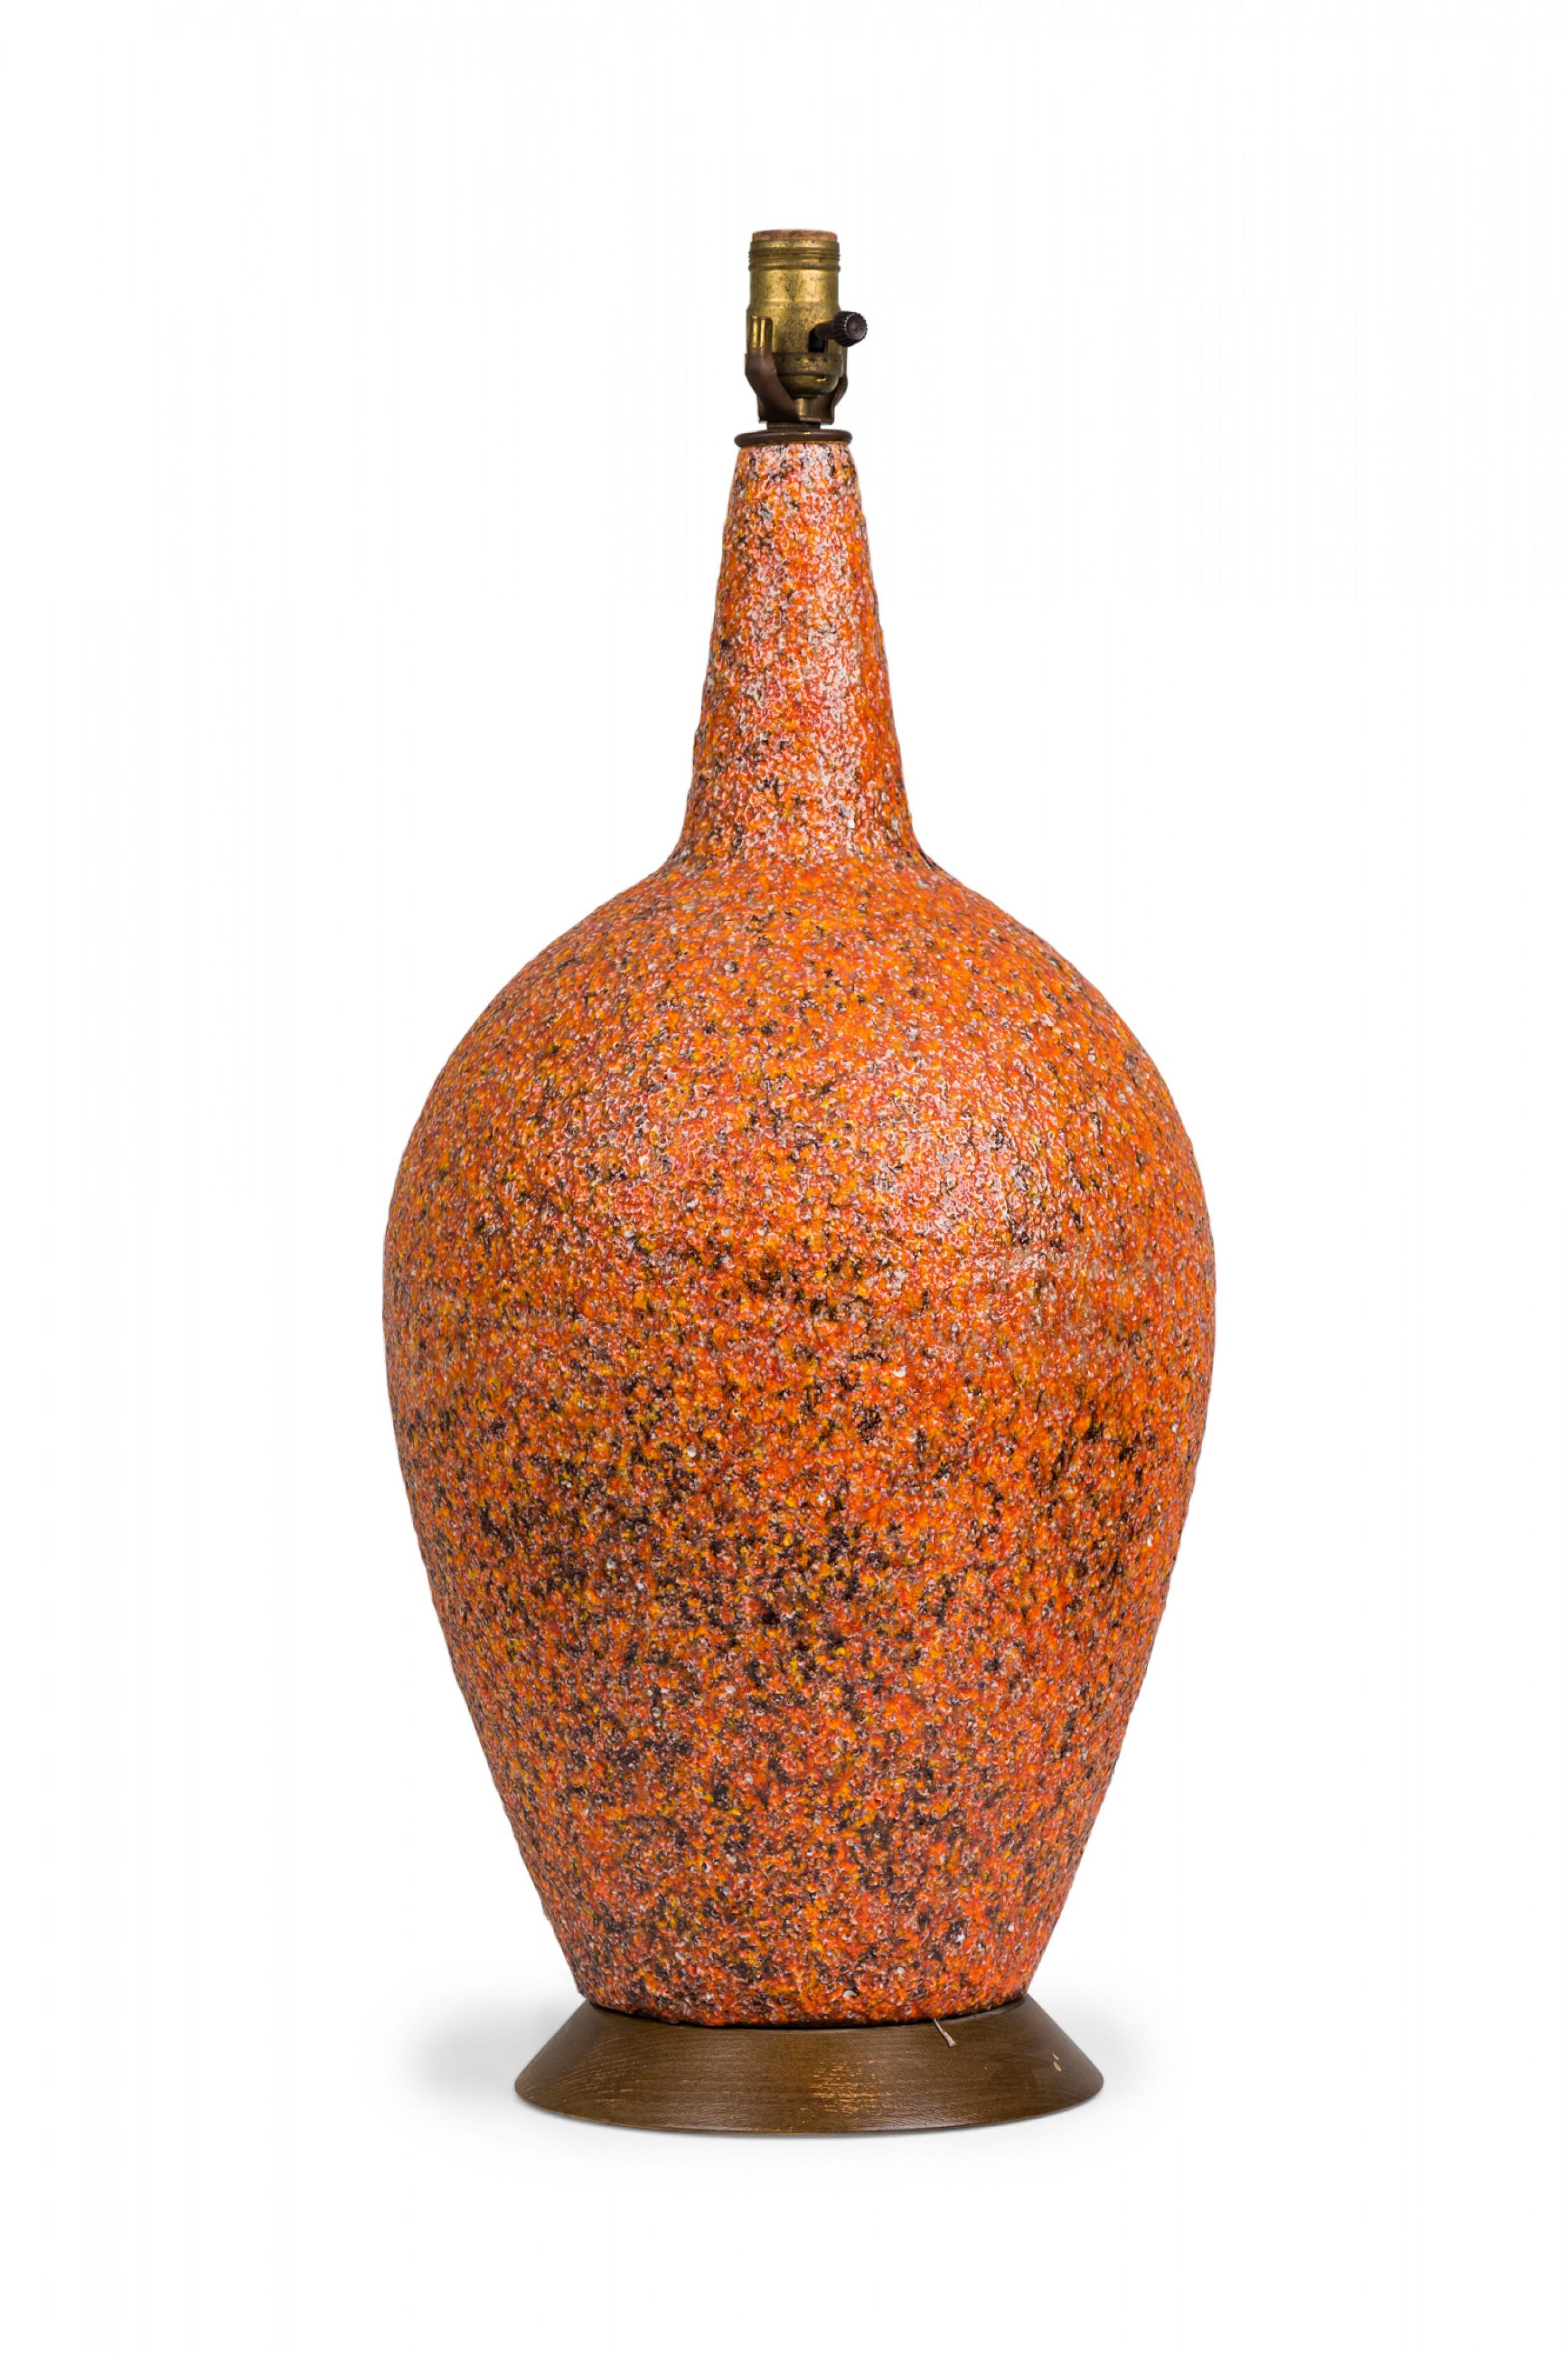 Amerikanische Keramik-Tischlampe aus der Mitte des Jahrhunderts in spitz zulaufender, eiförmiger Form, gebrannt in einer strukturierten, orangefarbenen, glänzenden Lavaglasur, nach oben hin schmaler werdend, mit einer funktionierenden